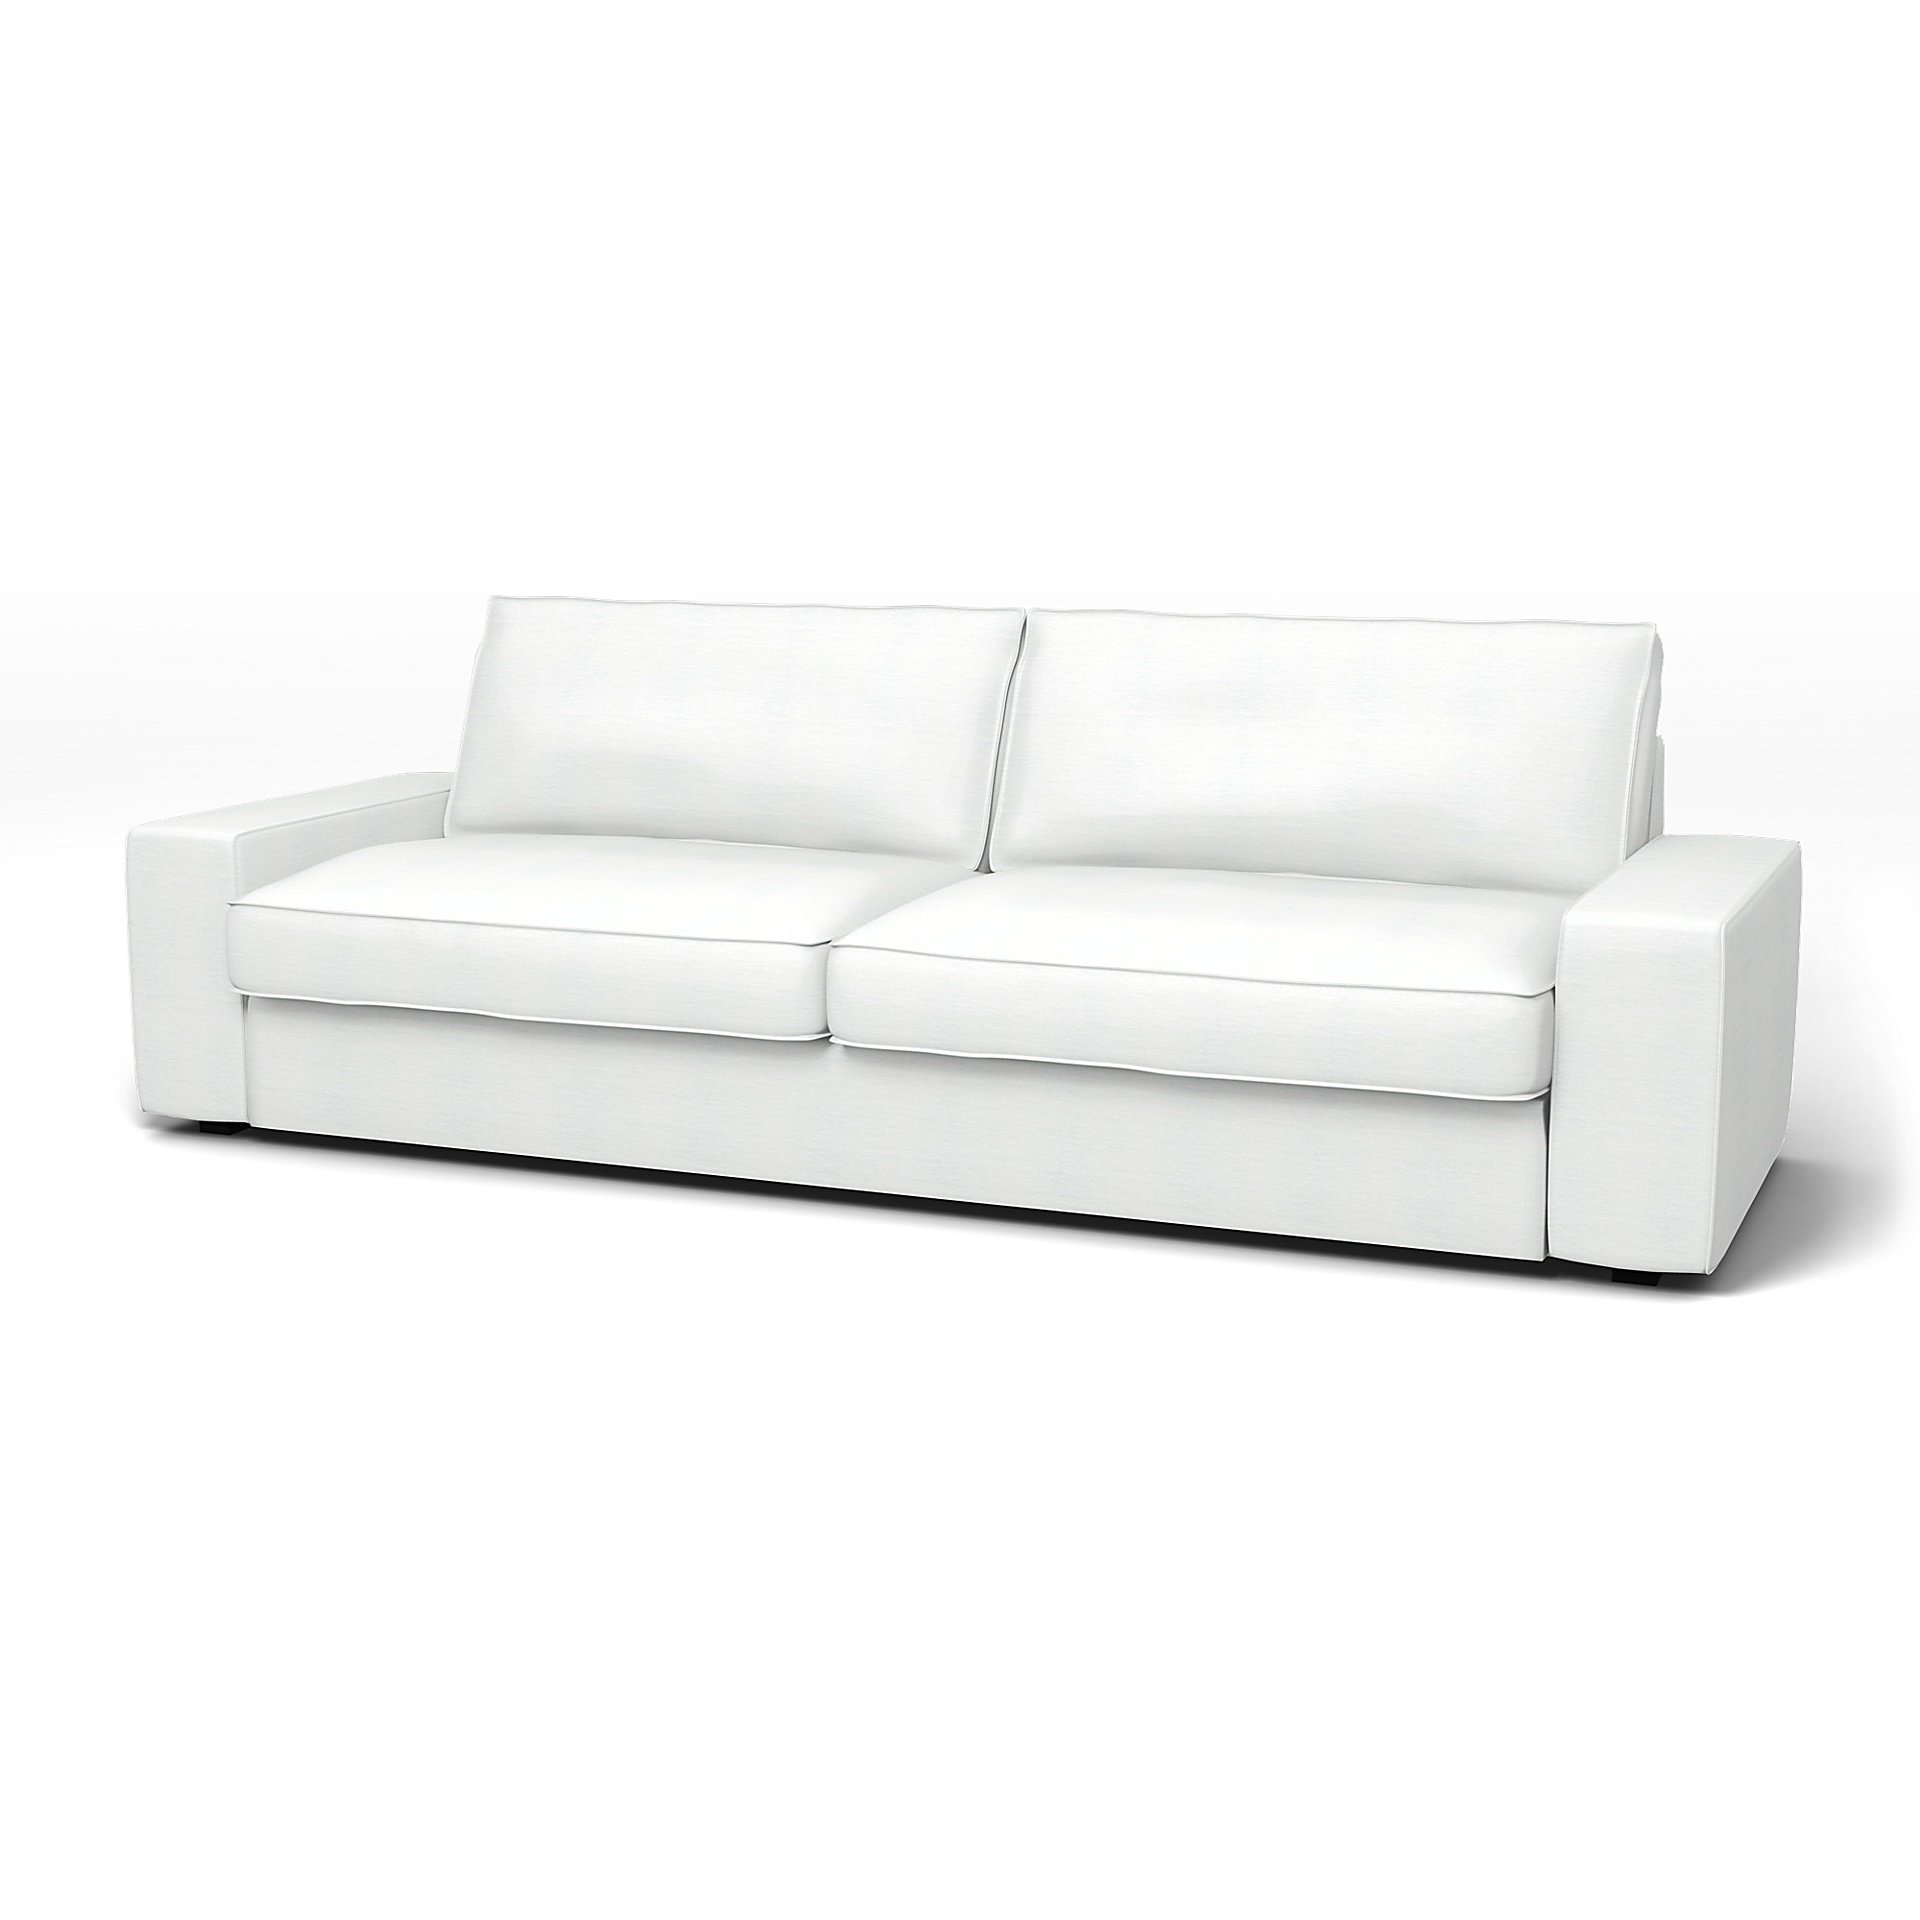 IKEA - Kivik Sofa Bed Cover, White, Linen - Bemz